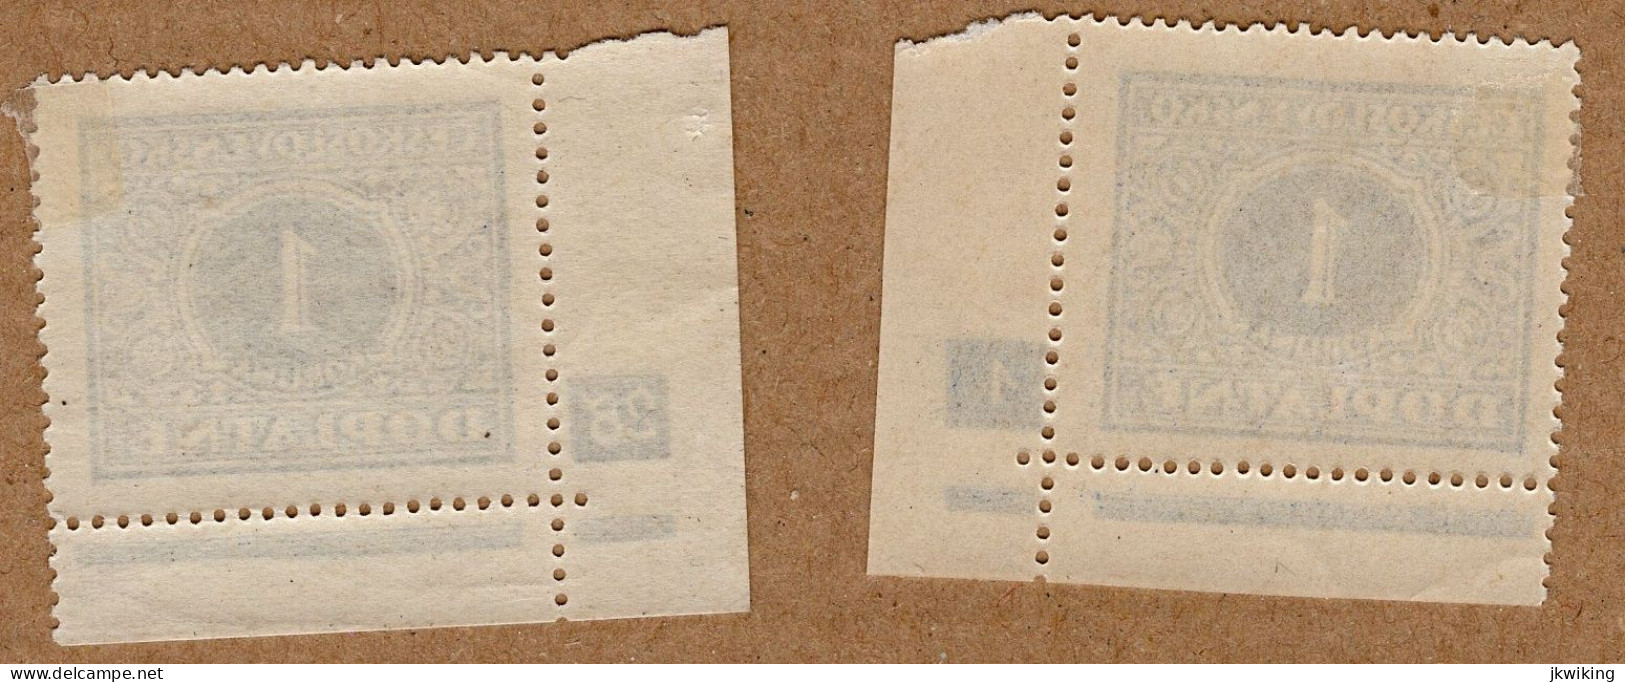 1928 - Doplatní - Definitivní Vydání - č. DL62 - Desková čísla - Unused Stamps